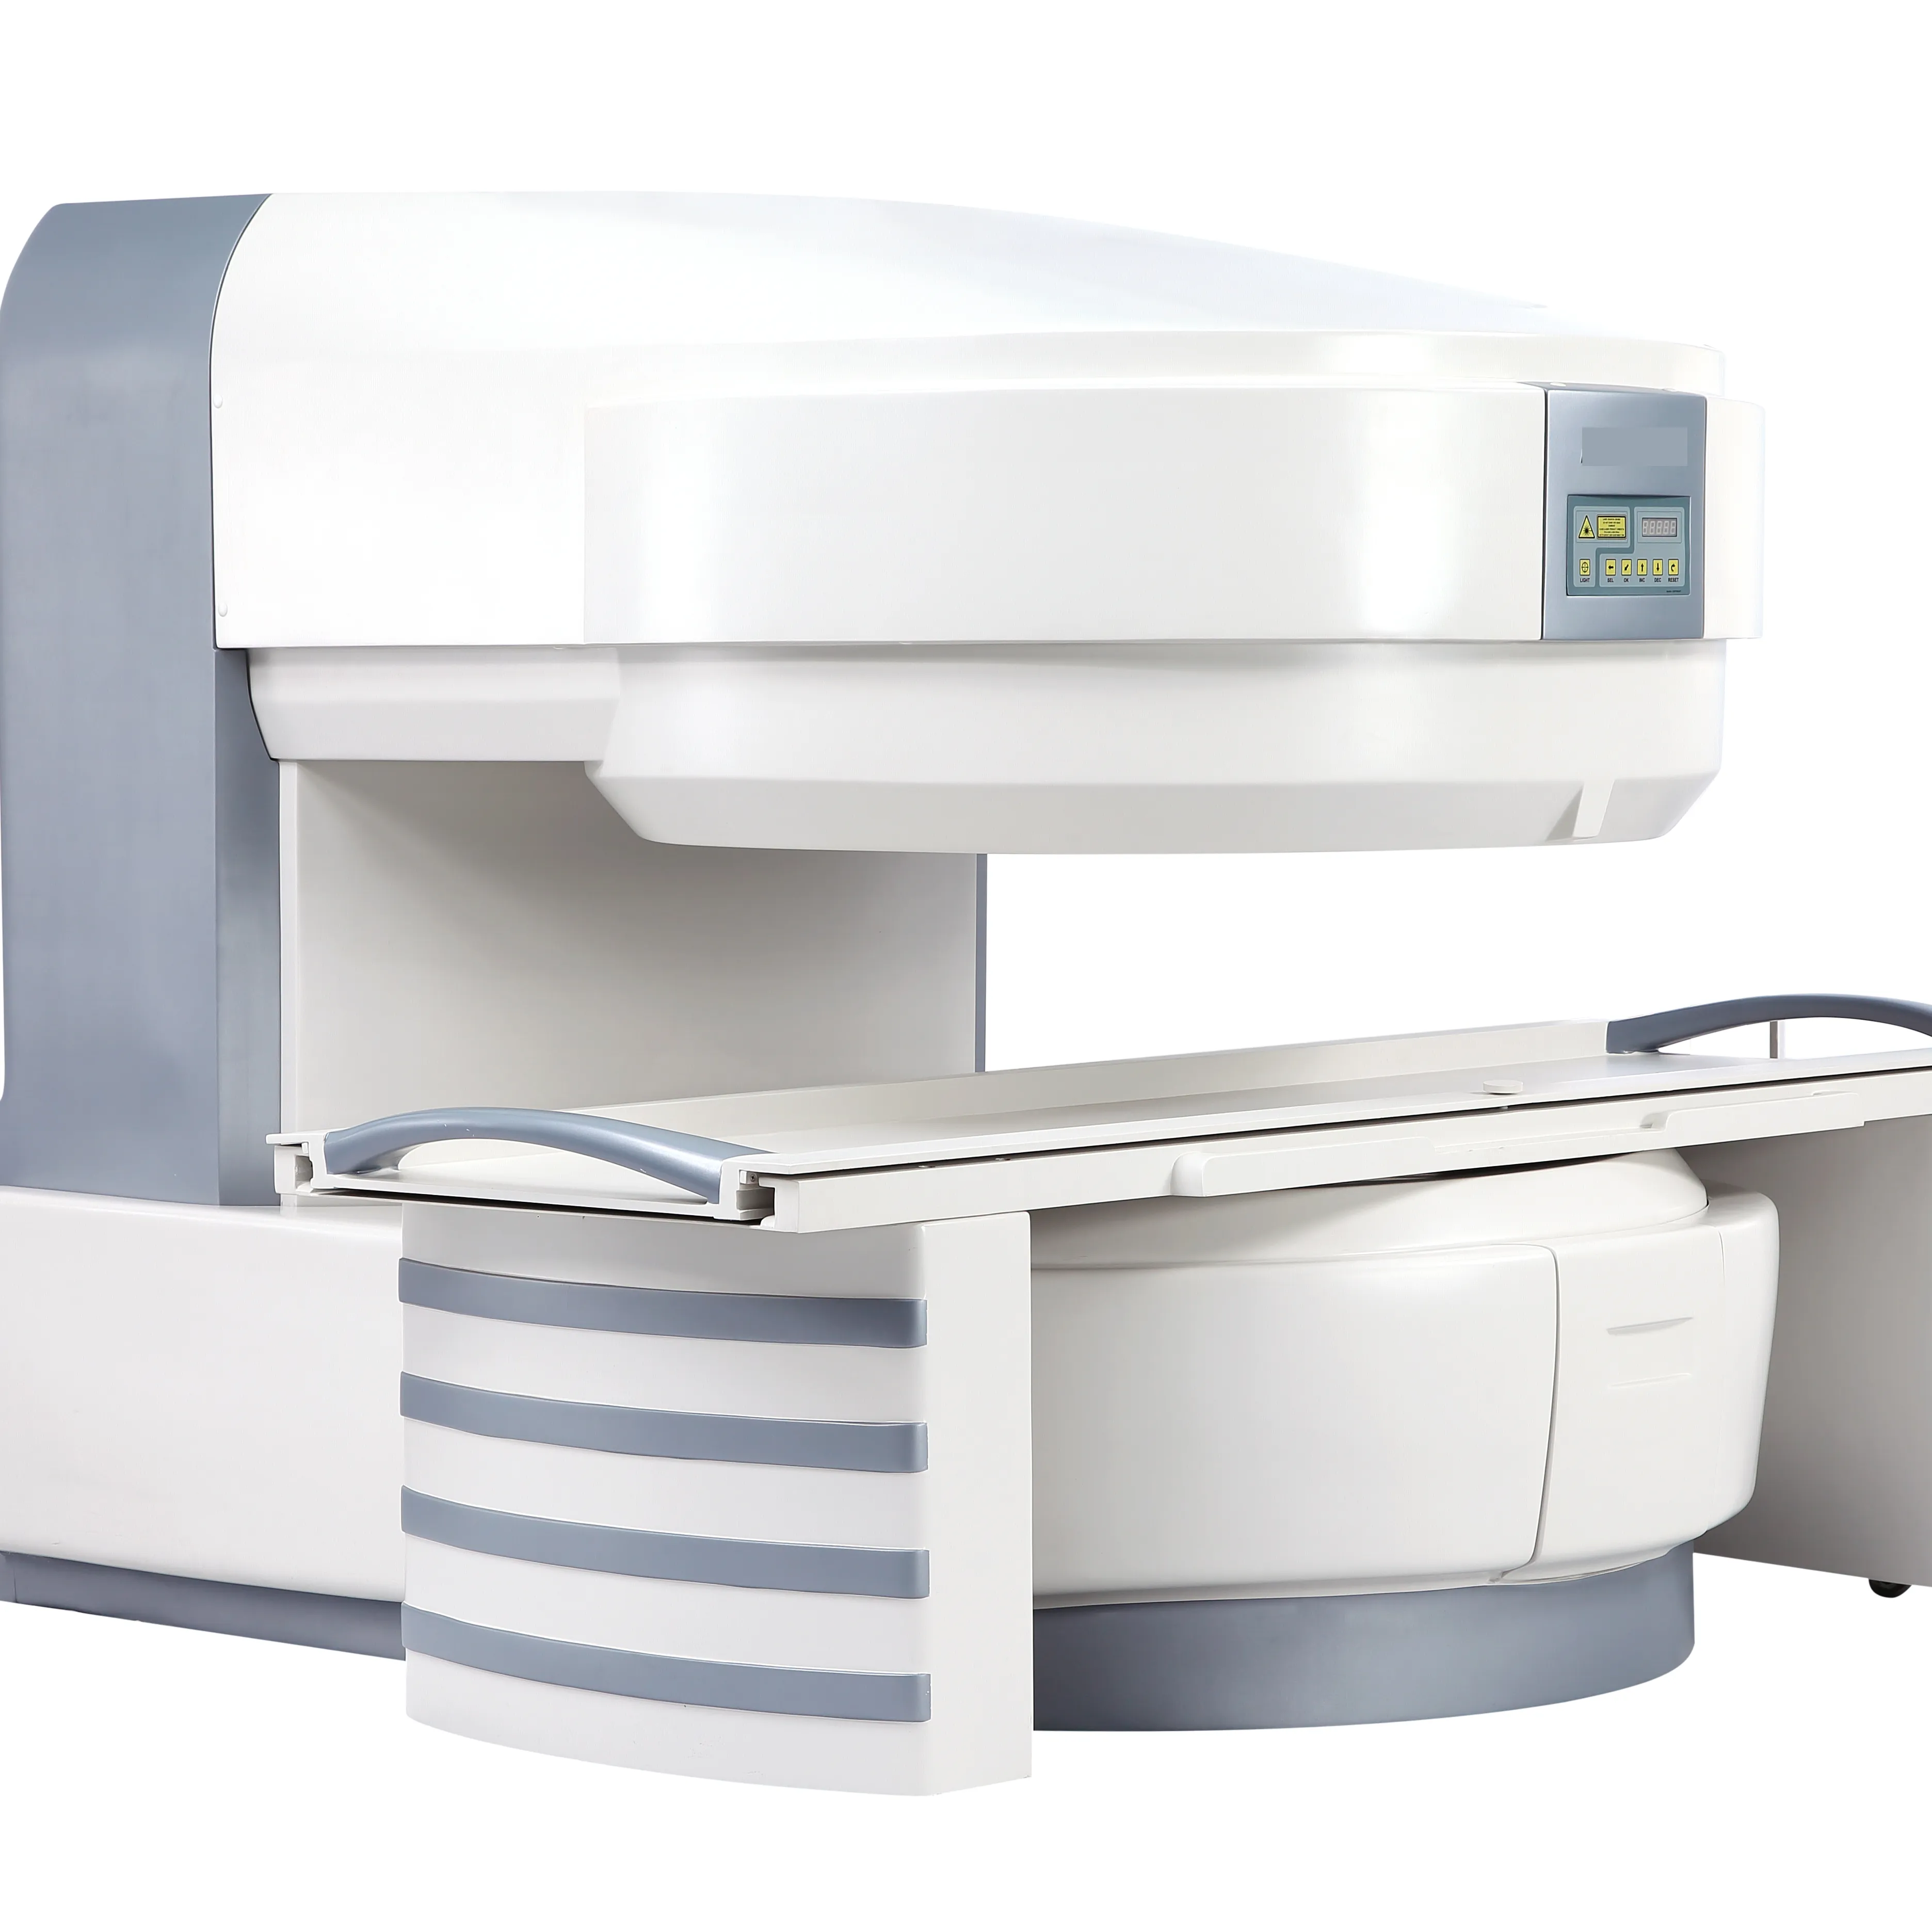 YSMRI-035 открытые 0,35 T магнитно-резонансной томографии с открытым магнитно-резонансной томографии системы цена